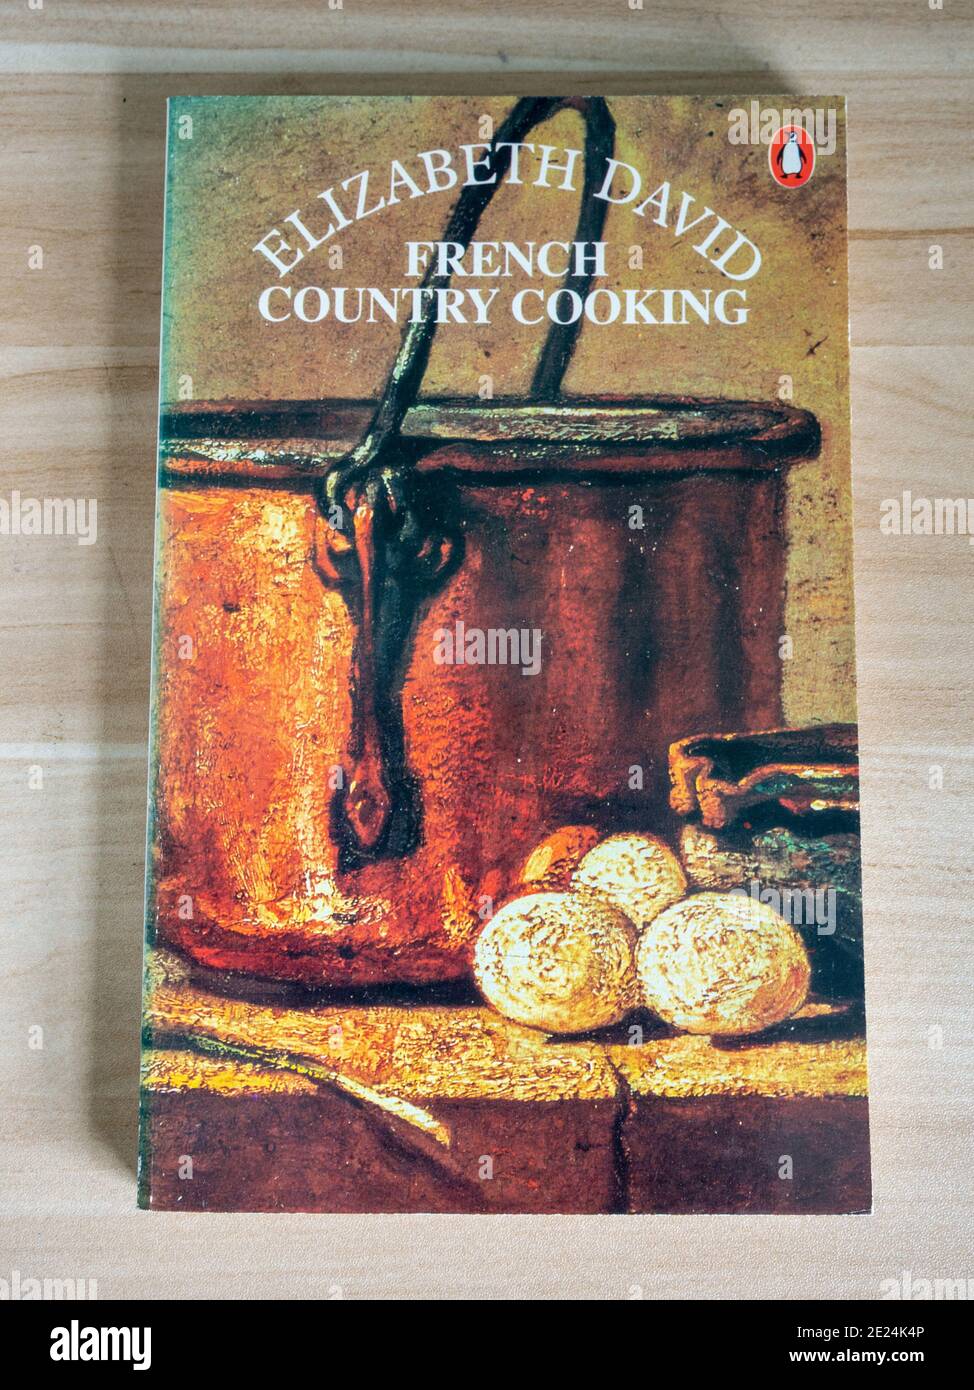 Cucina Francese Paese di Elizabeth David, un libro cartaceo pubblicato da Penguin Books, 1966. Foto Stock